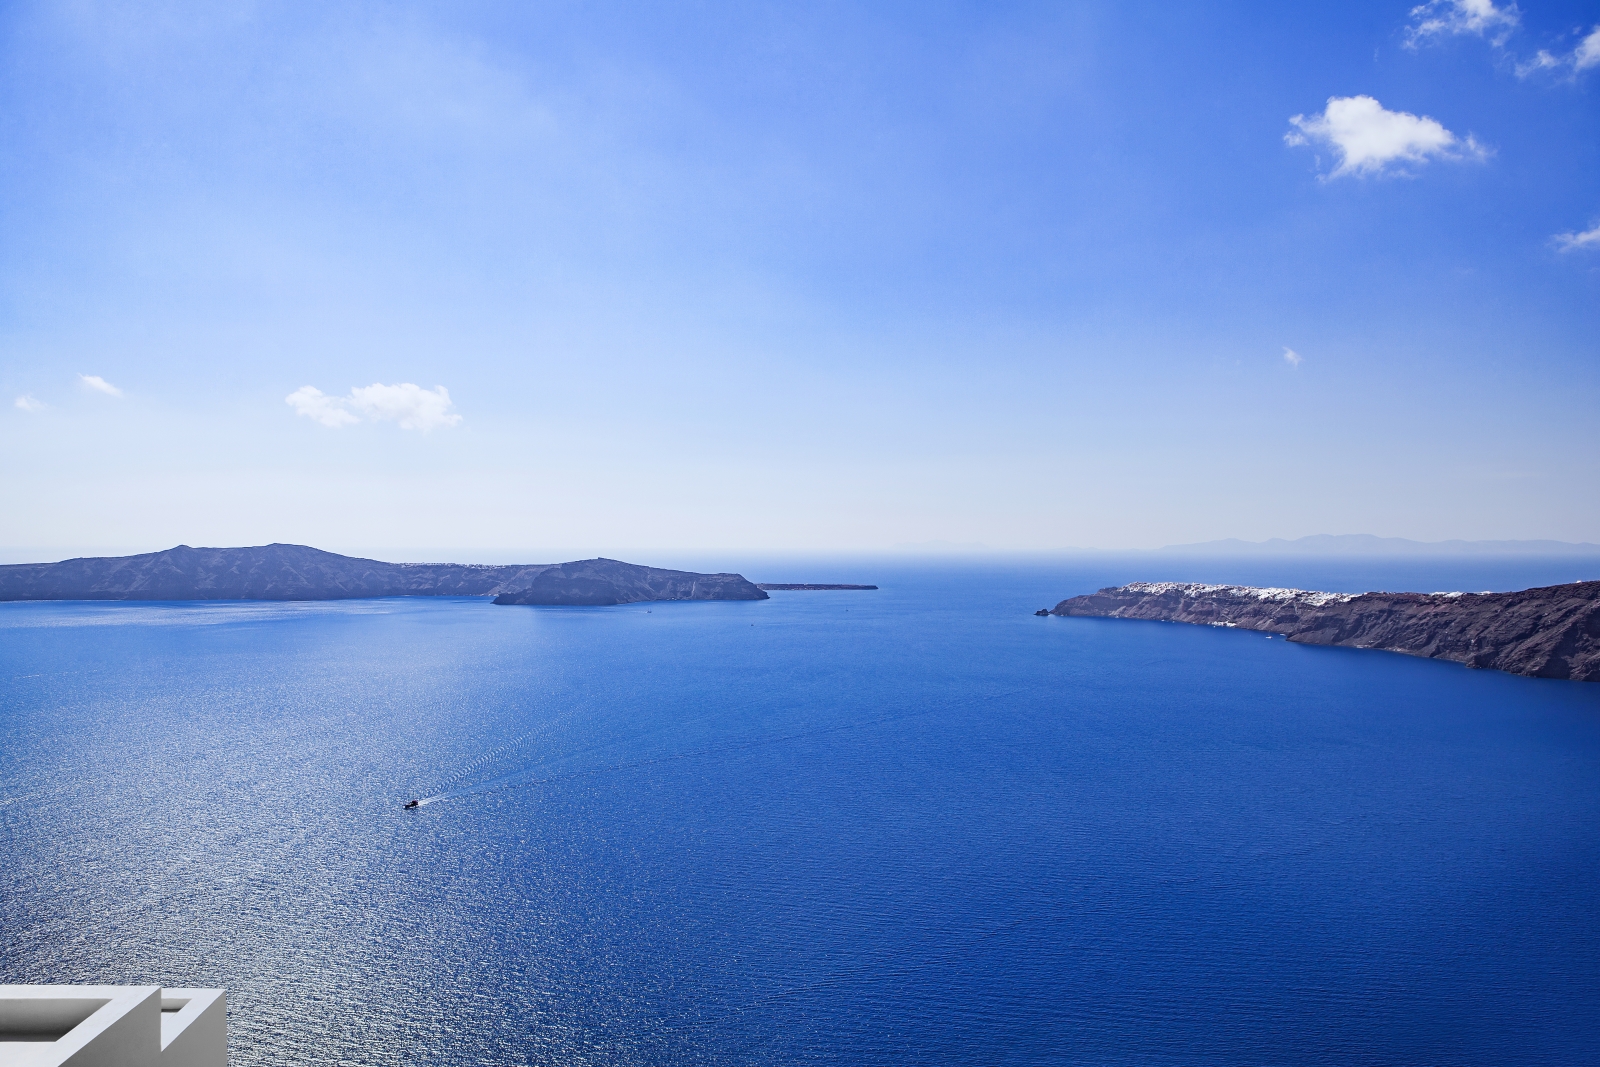 Sea view from Erossea on Santorini, Greece